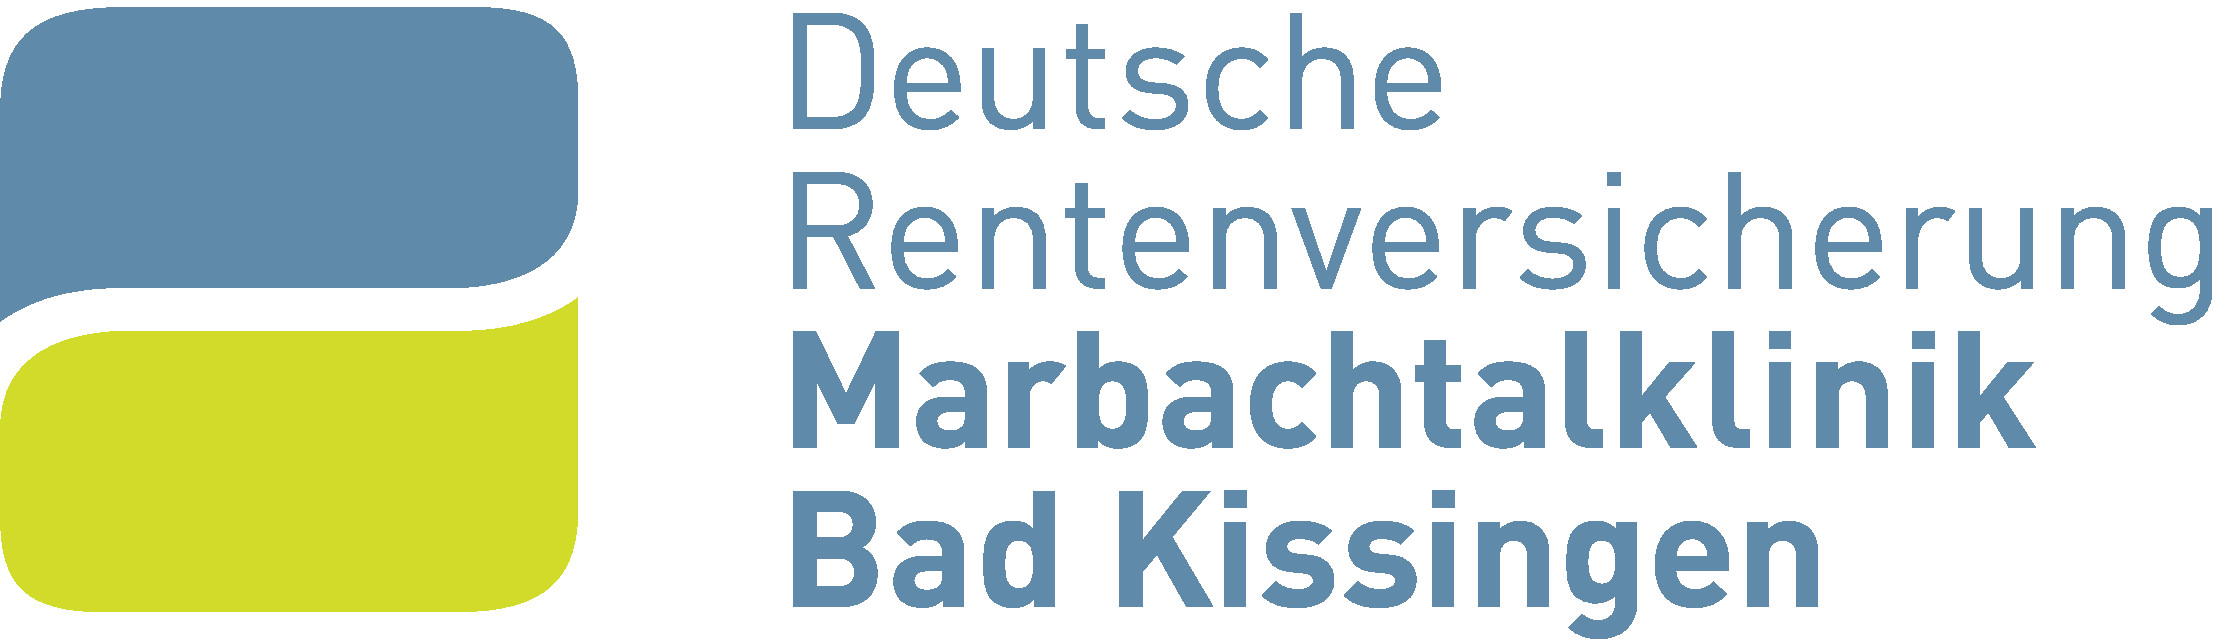 Marbachtalklinik Bad Kissingen